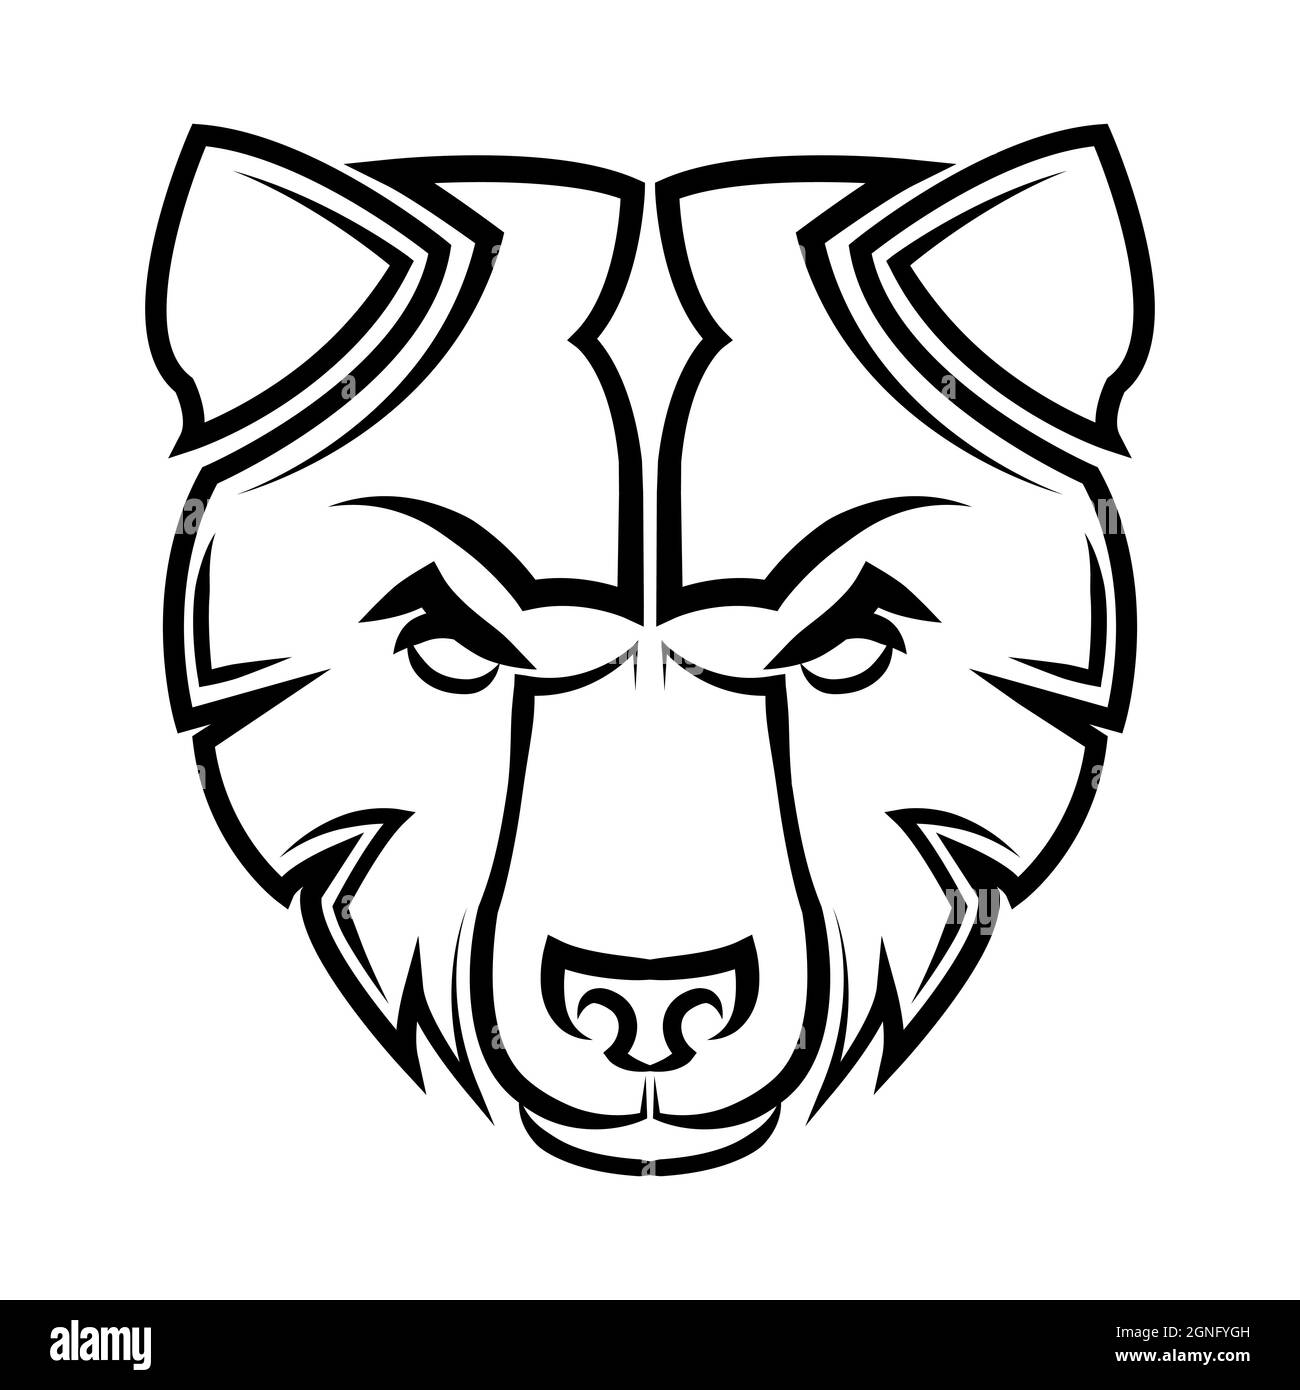 Noir et blanc ligne art de la tête d'ours bonne utilisation pour symbole mascotte icône avatar tatouage T logo de création de chemise. Illustration de Vecteur